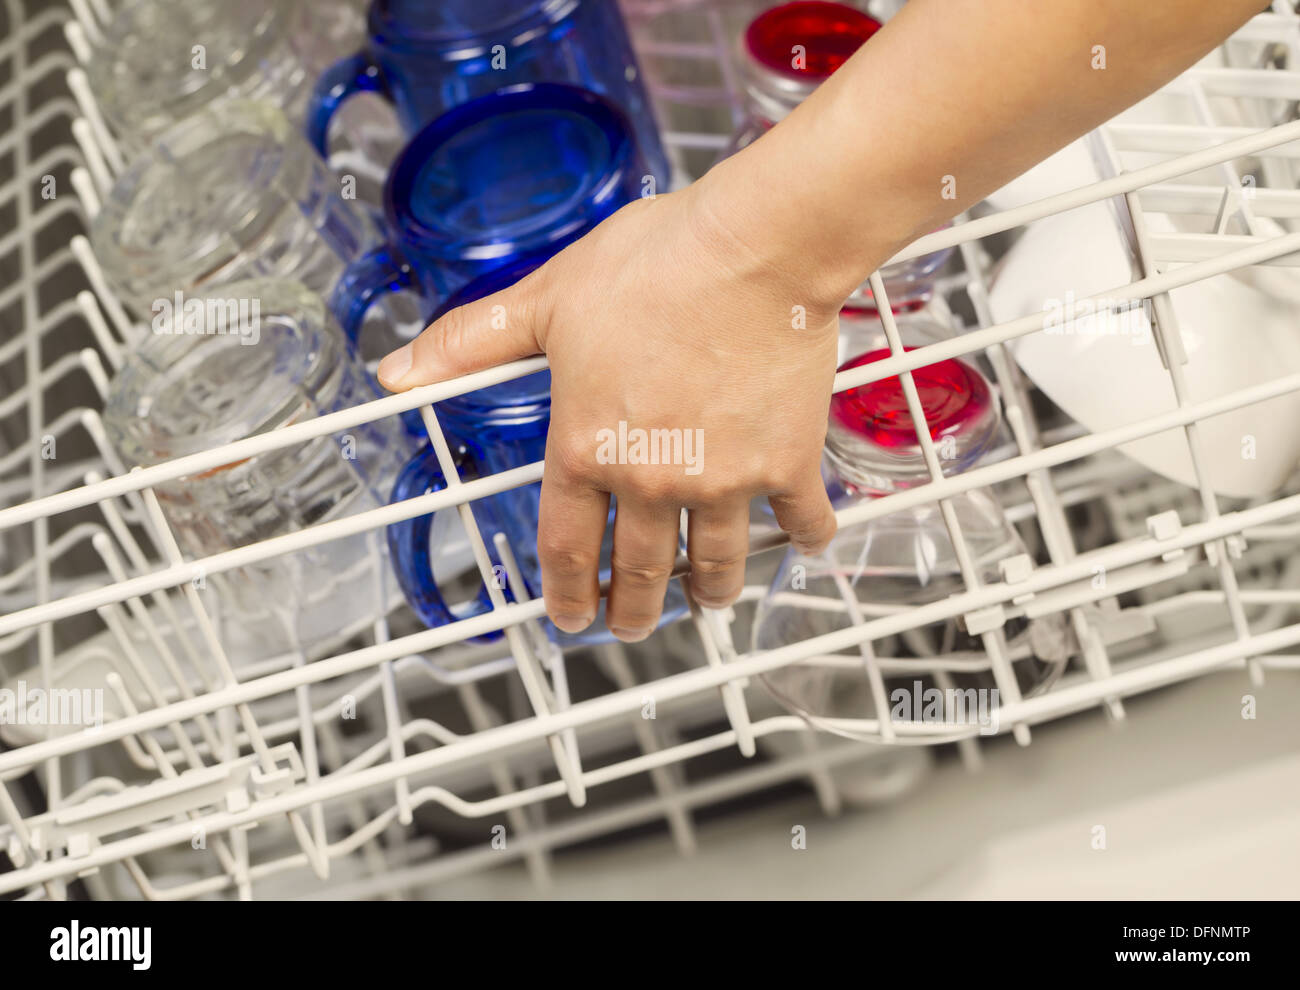 Foto orizzontale della mano femminile superiore di chiusura cestello portastoviglie dalla lavastoviglie con i colori blu, rosso chiaro, rosa bicchieri e tazze bianche Foto Stock